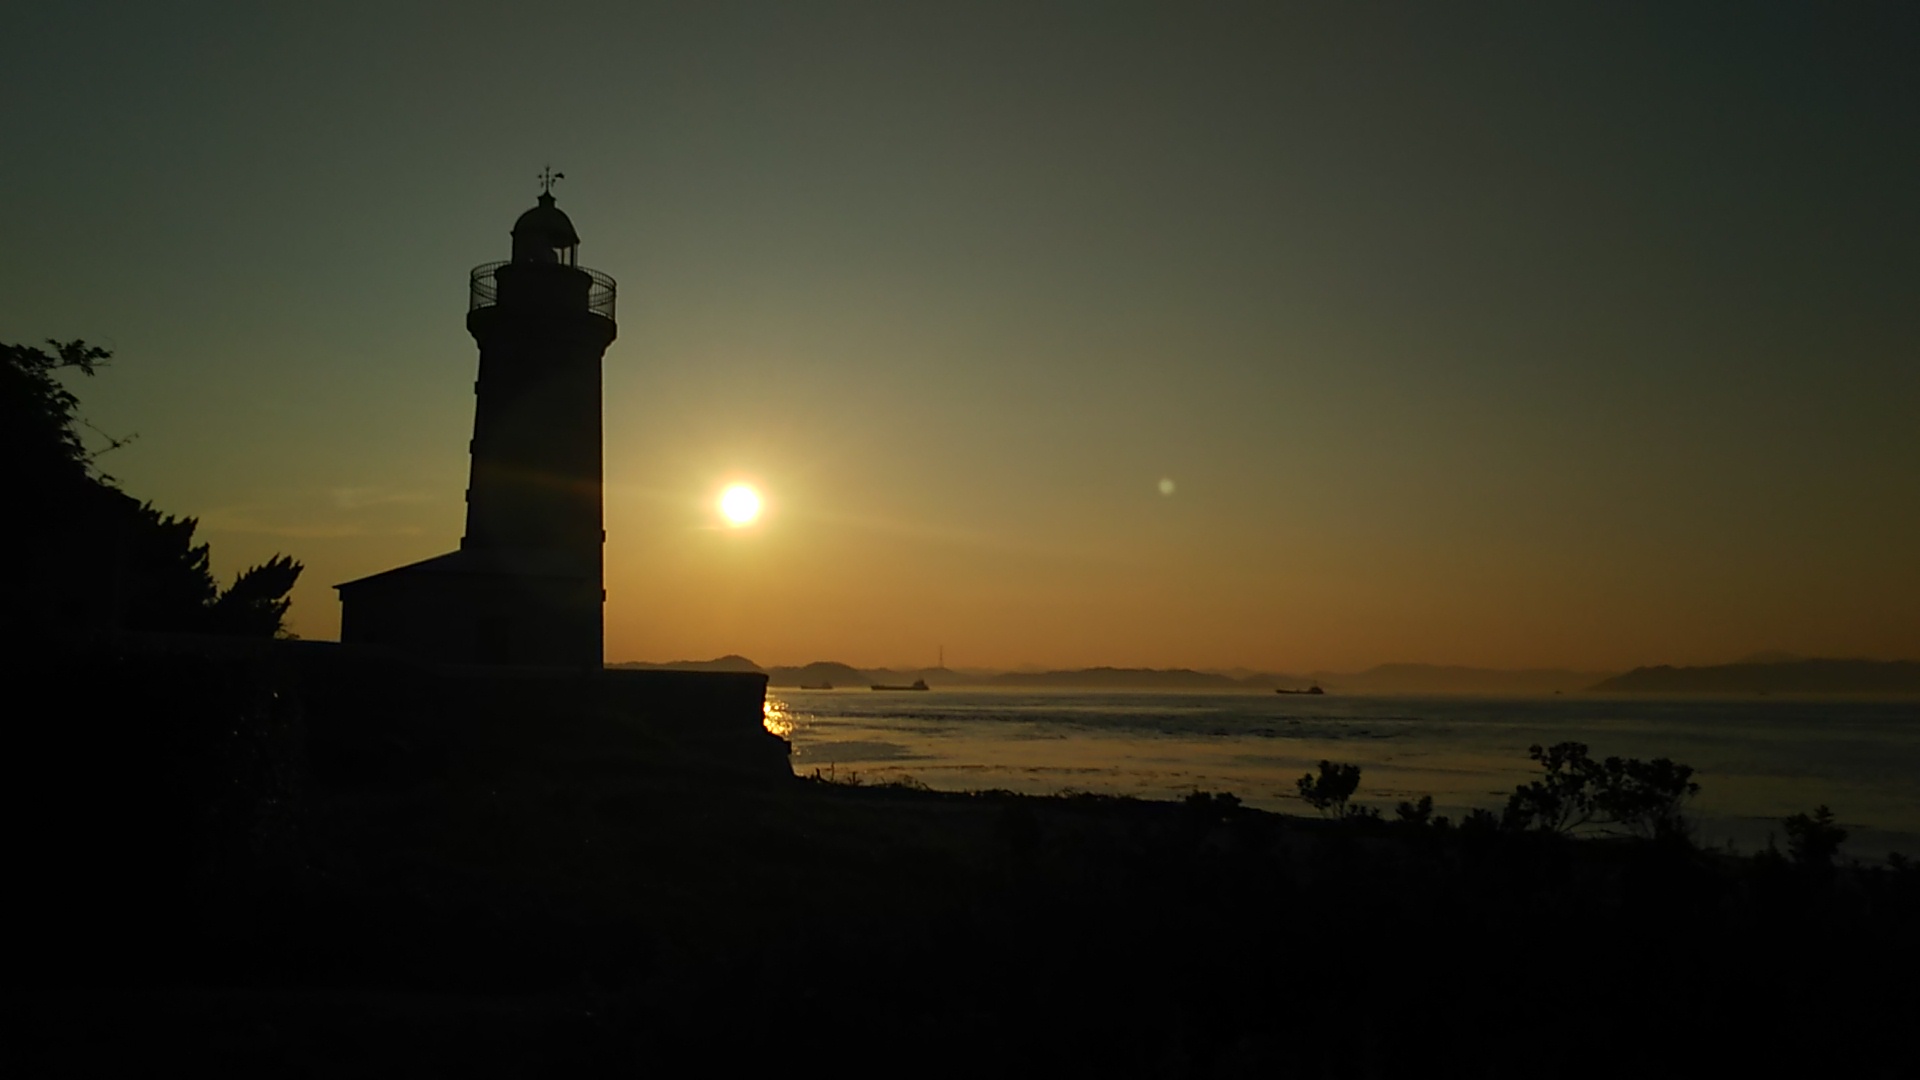 夕暮れに泥む男木島灯台と夕日